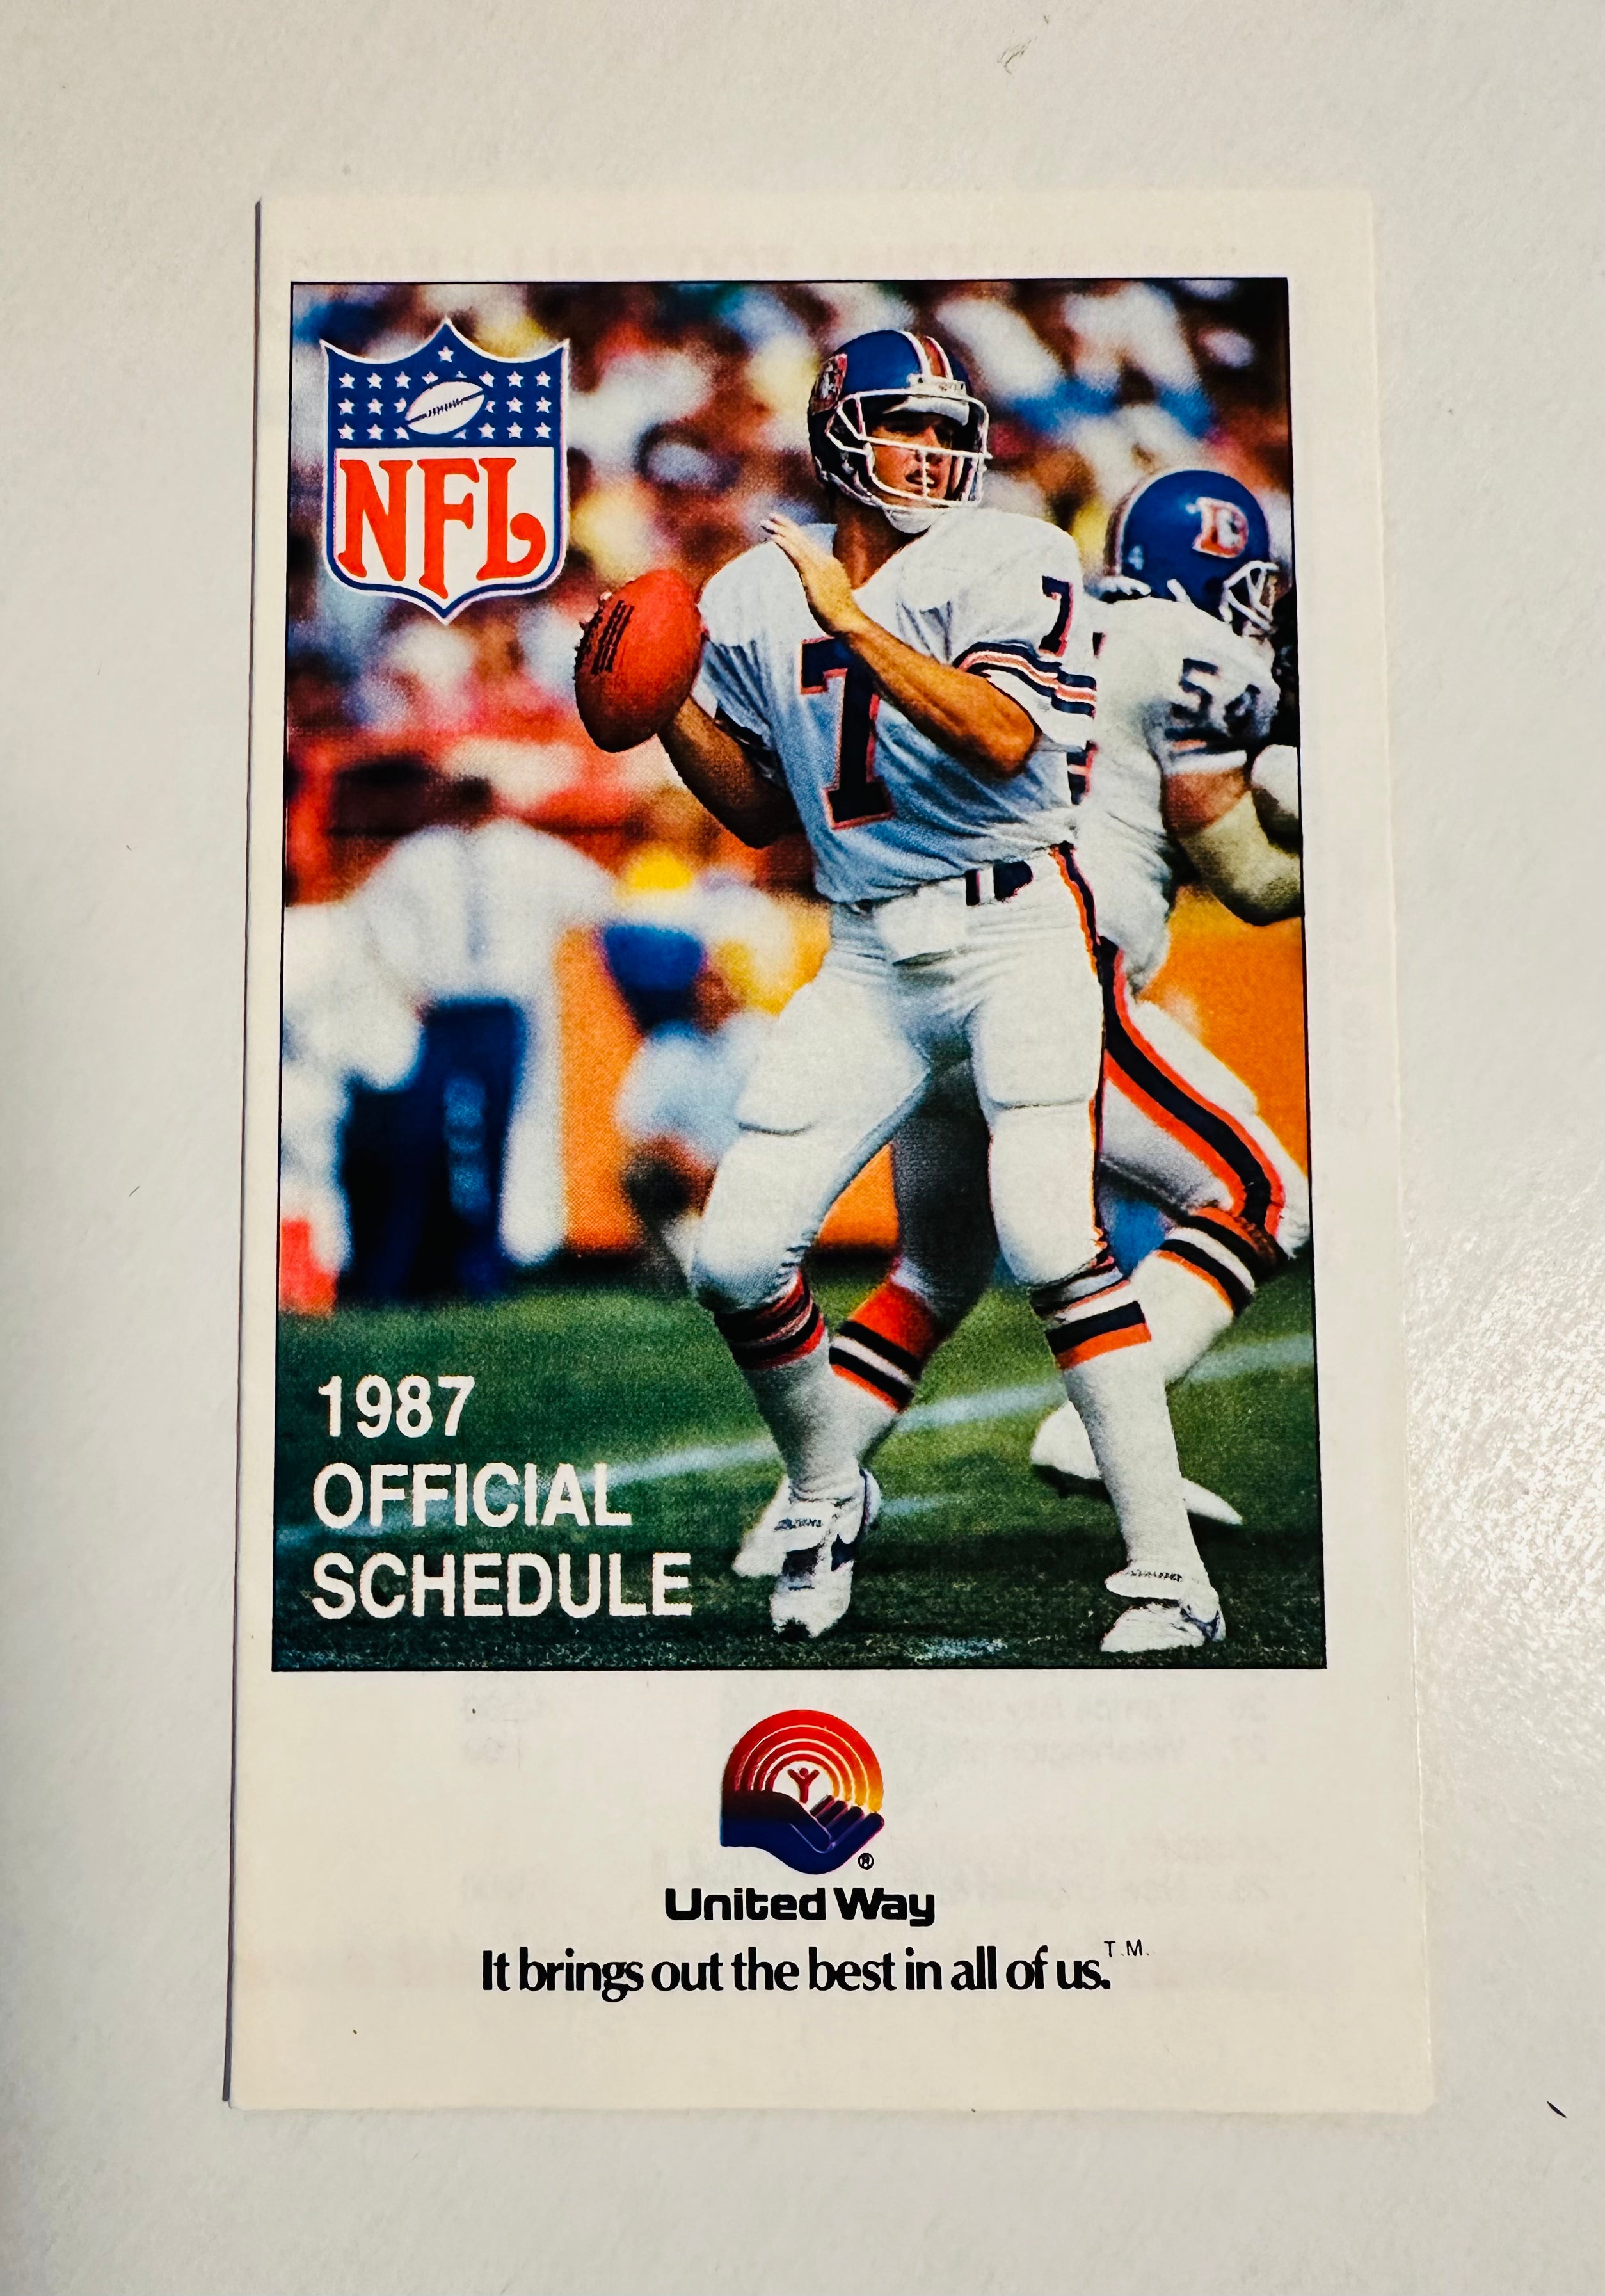 John Elway, NFL, vintage football schedule 1987